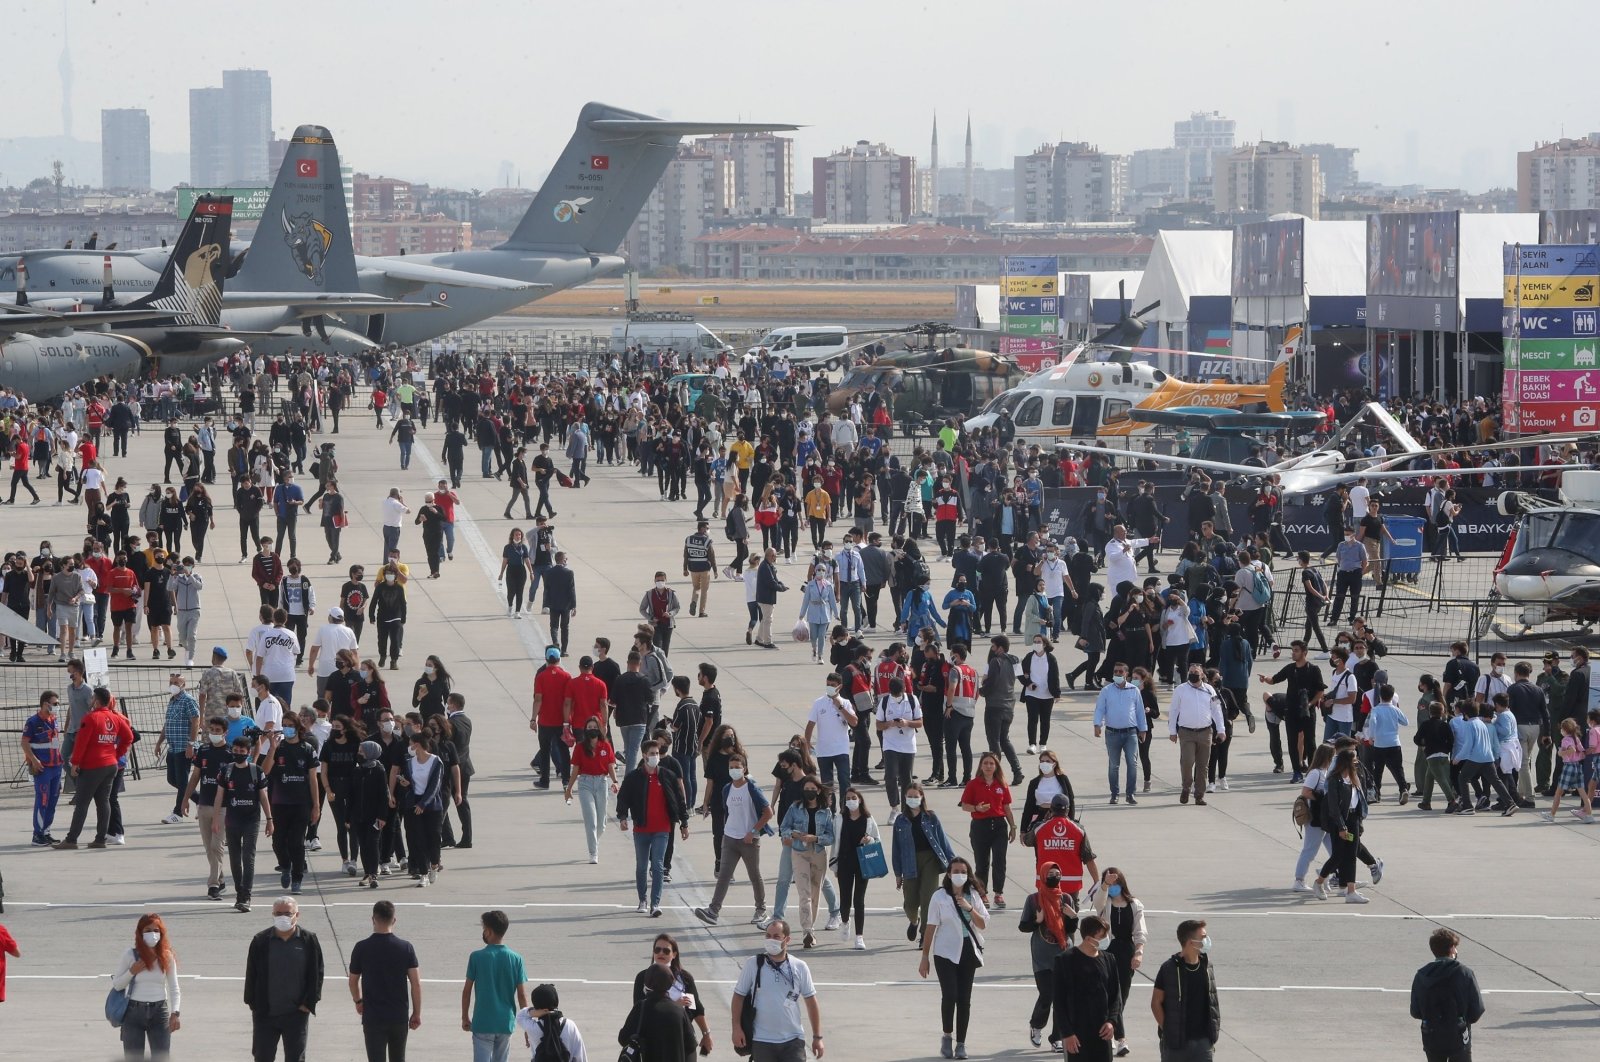 Teknologi terbesar Türkiye, acara penerbangan Teknofest akan dimulai minggu depan